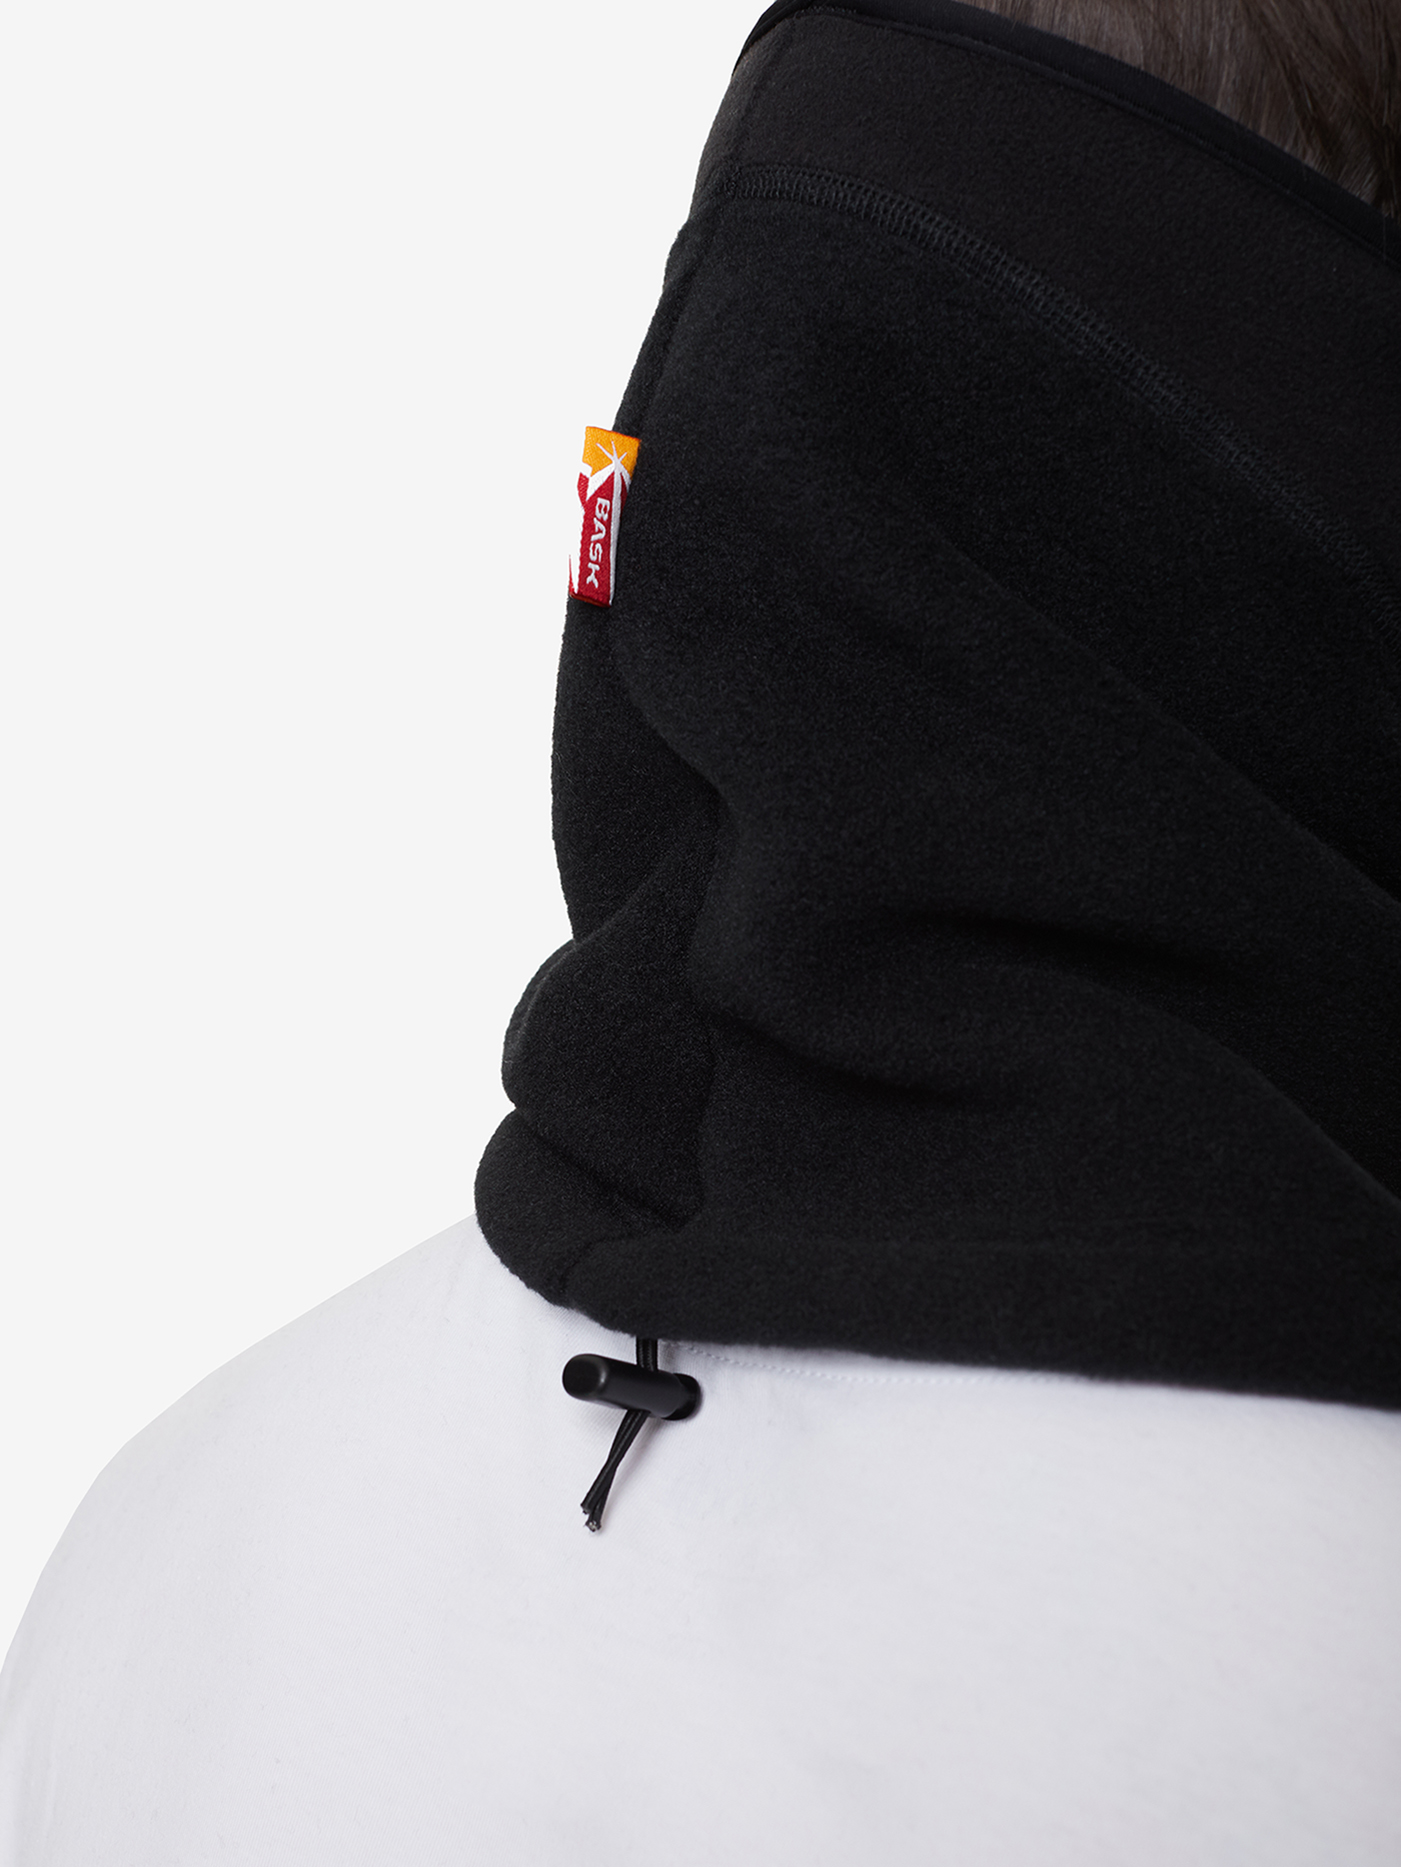 Шапка-маска BASK, размер XL, цвет черный 1203-9009-XL NOWIND MASK - фото 10